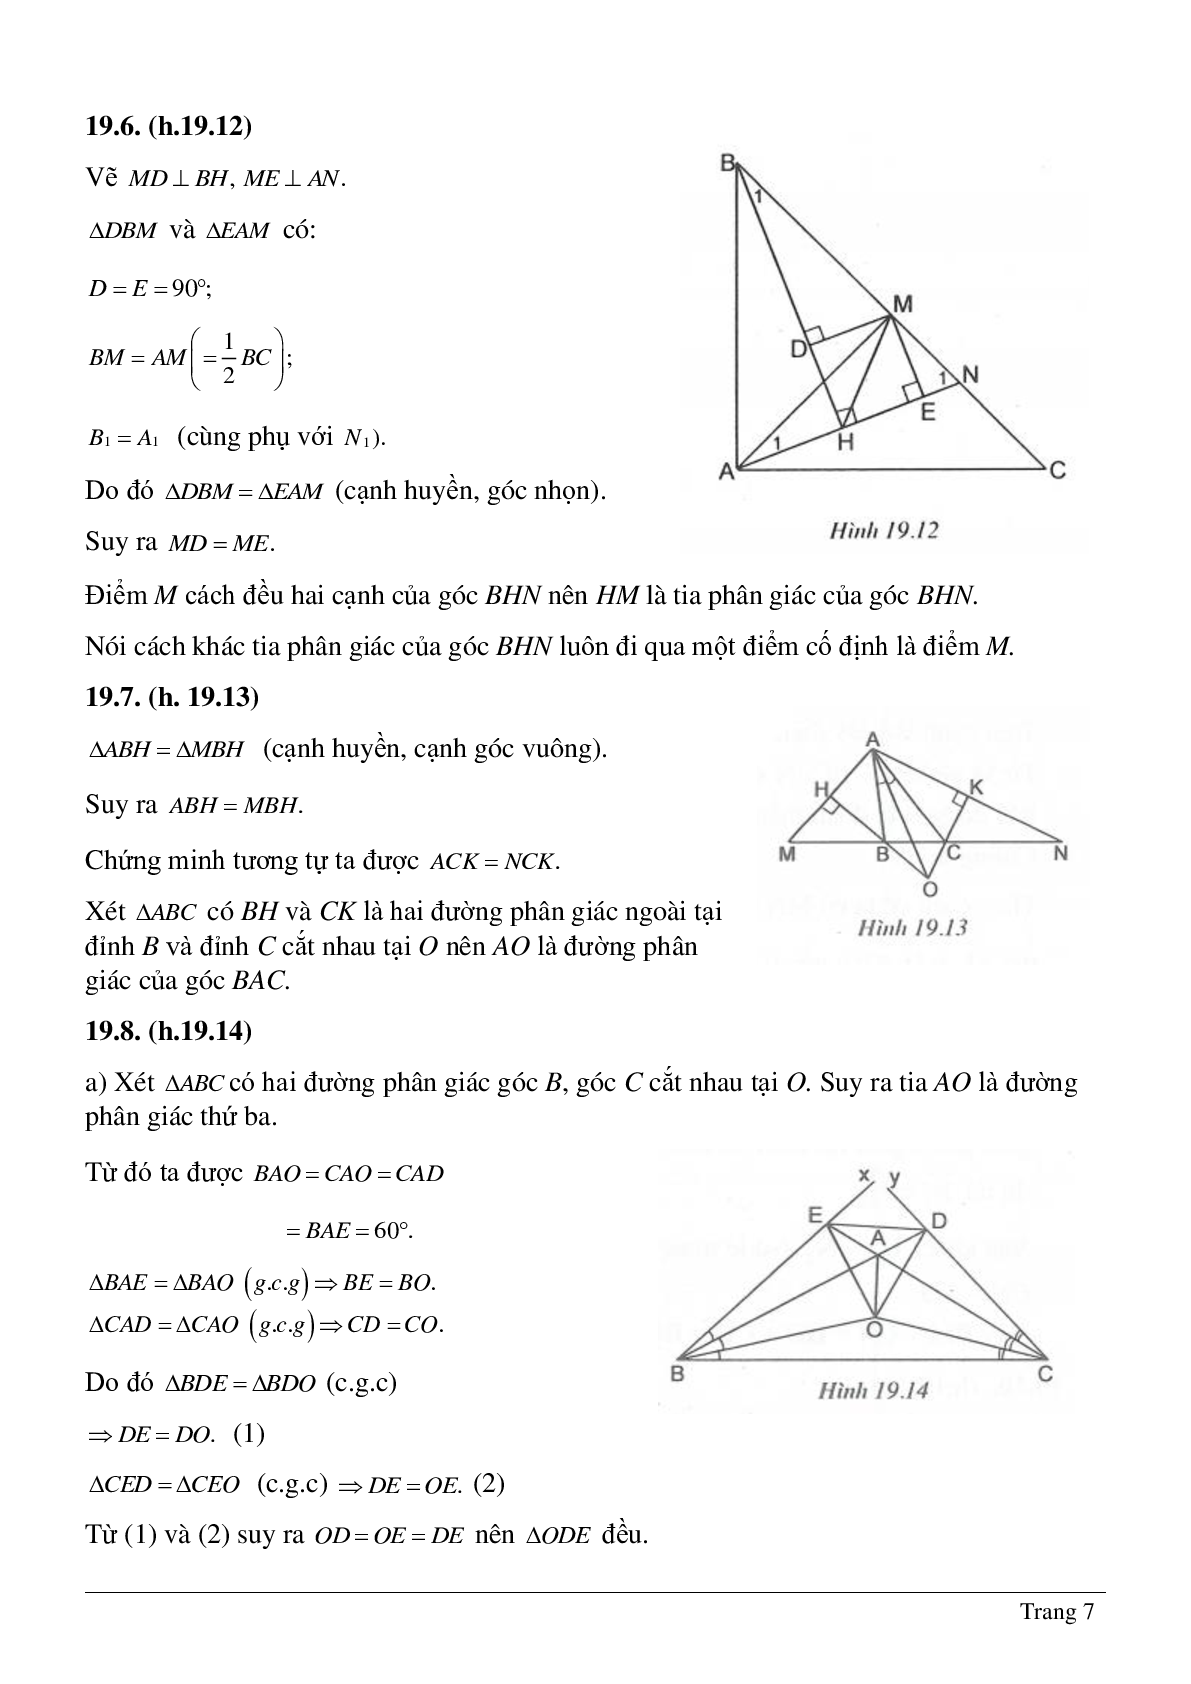 Phương pháp giải và bài tập về Tính chất tia phân giác của một góc - Tính chất ba đường phân giác của tam giác có lời giải (trang 7)